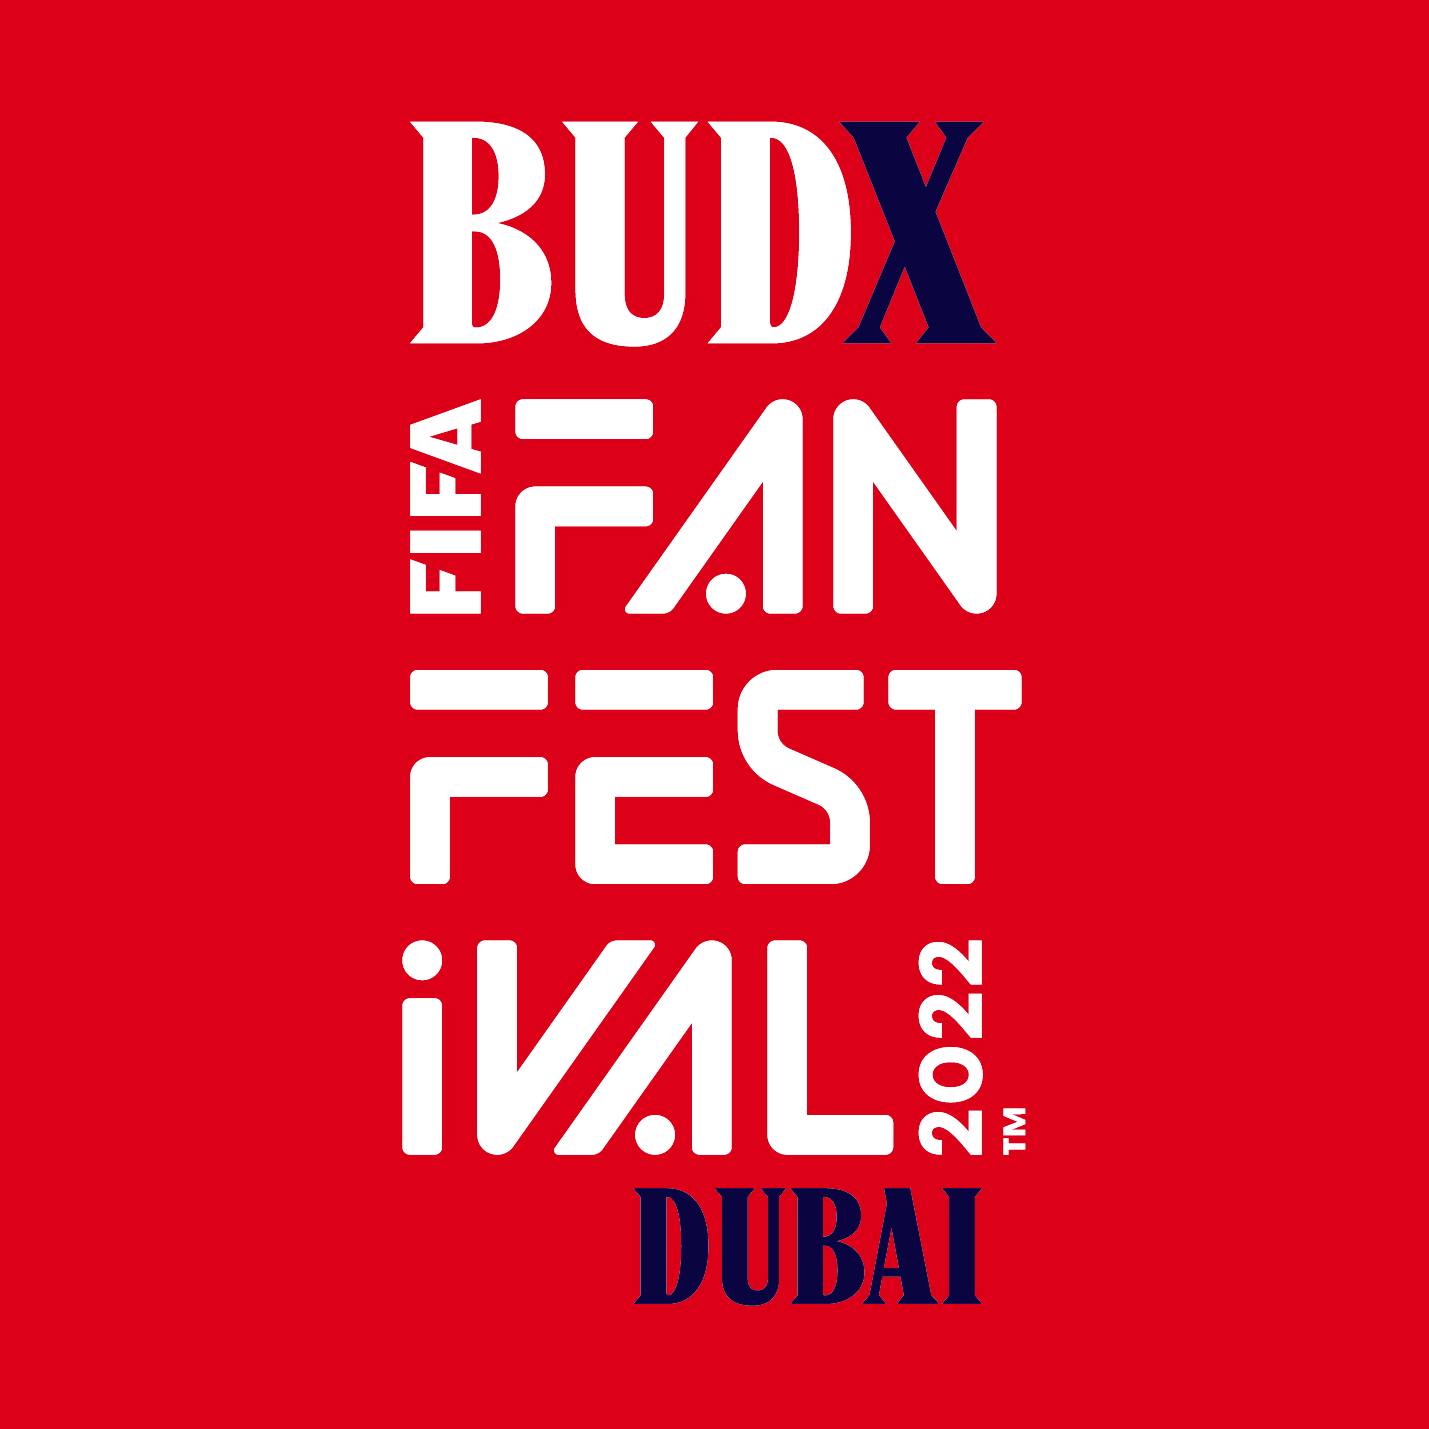 Budx fifa fan festival dubai